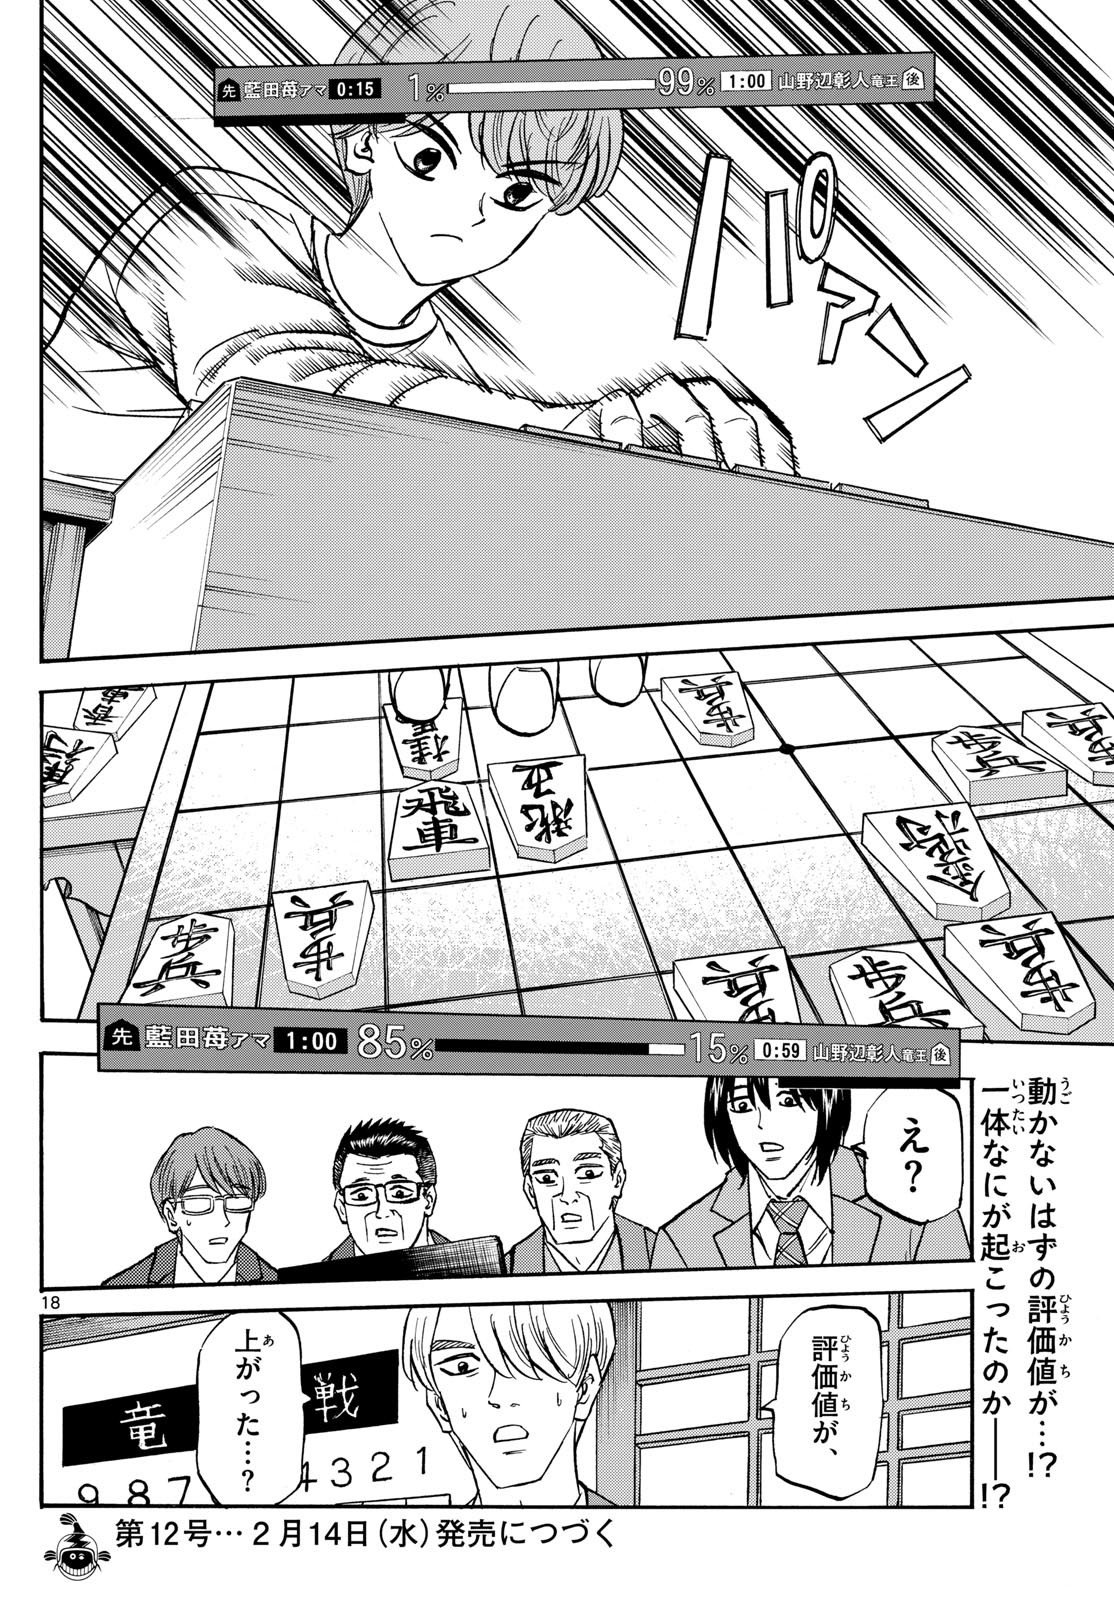 Ryu-to-Ichigo - Chapter 178 - Page 18